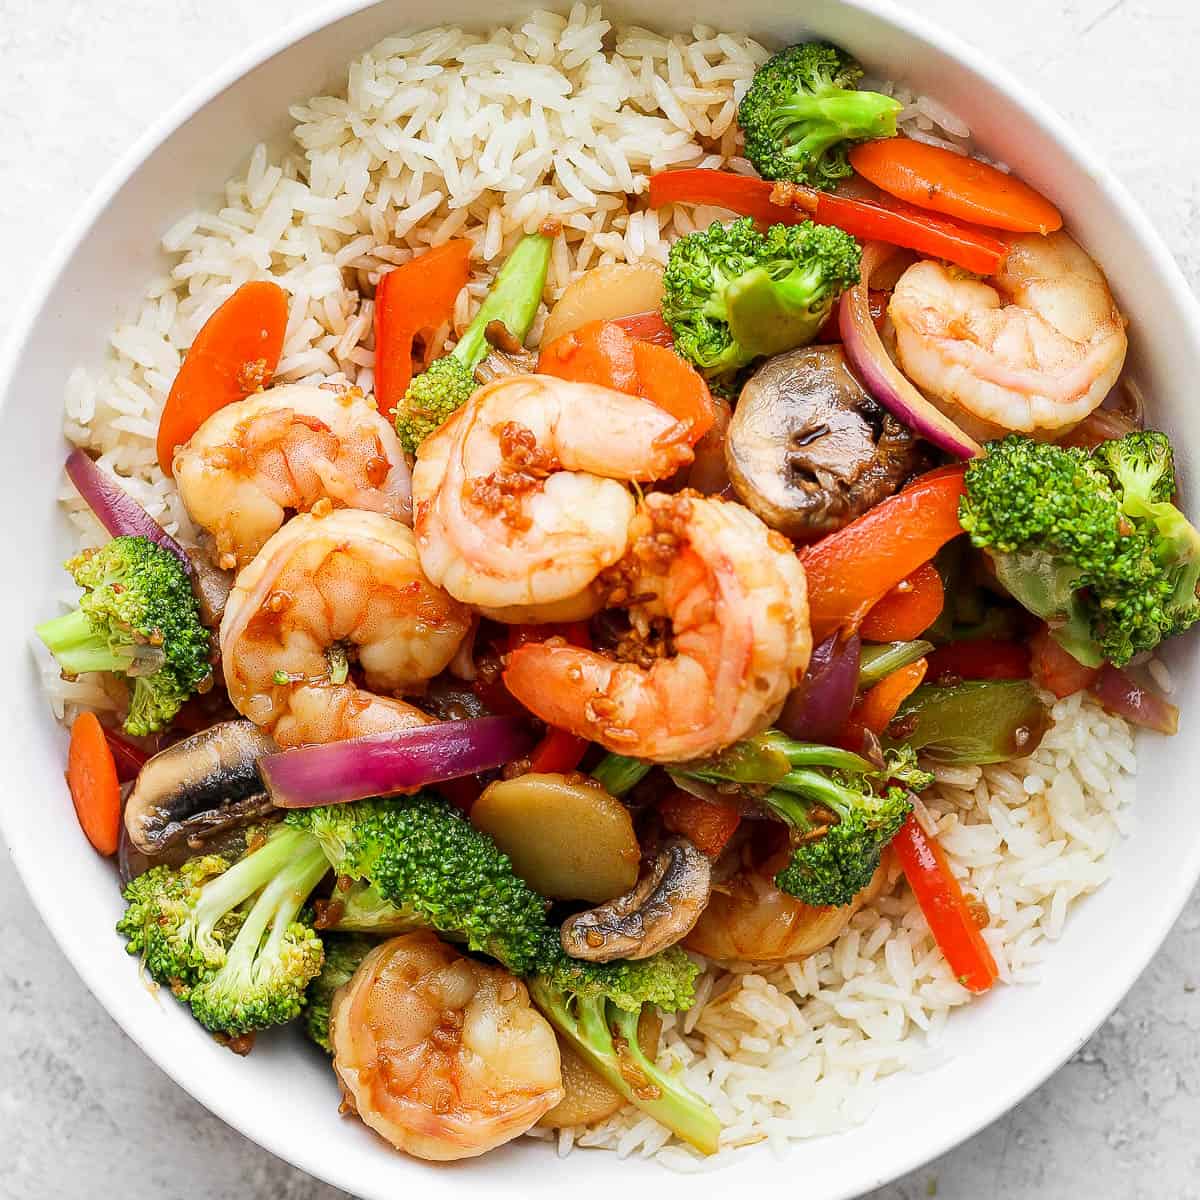 Bowl of shrimp stir fry over rice.